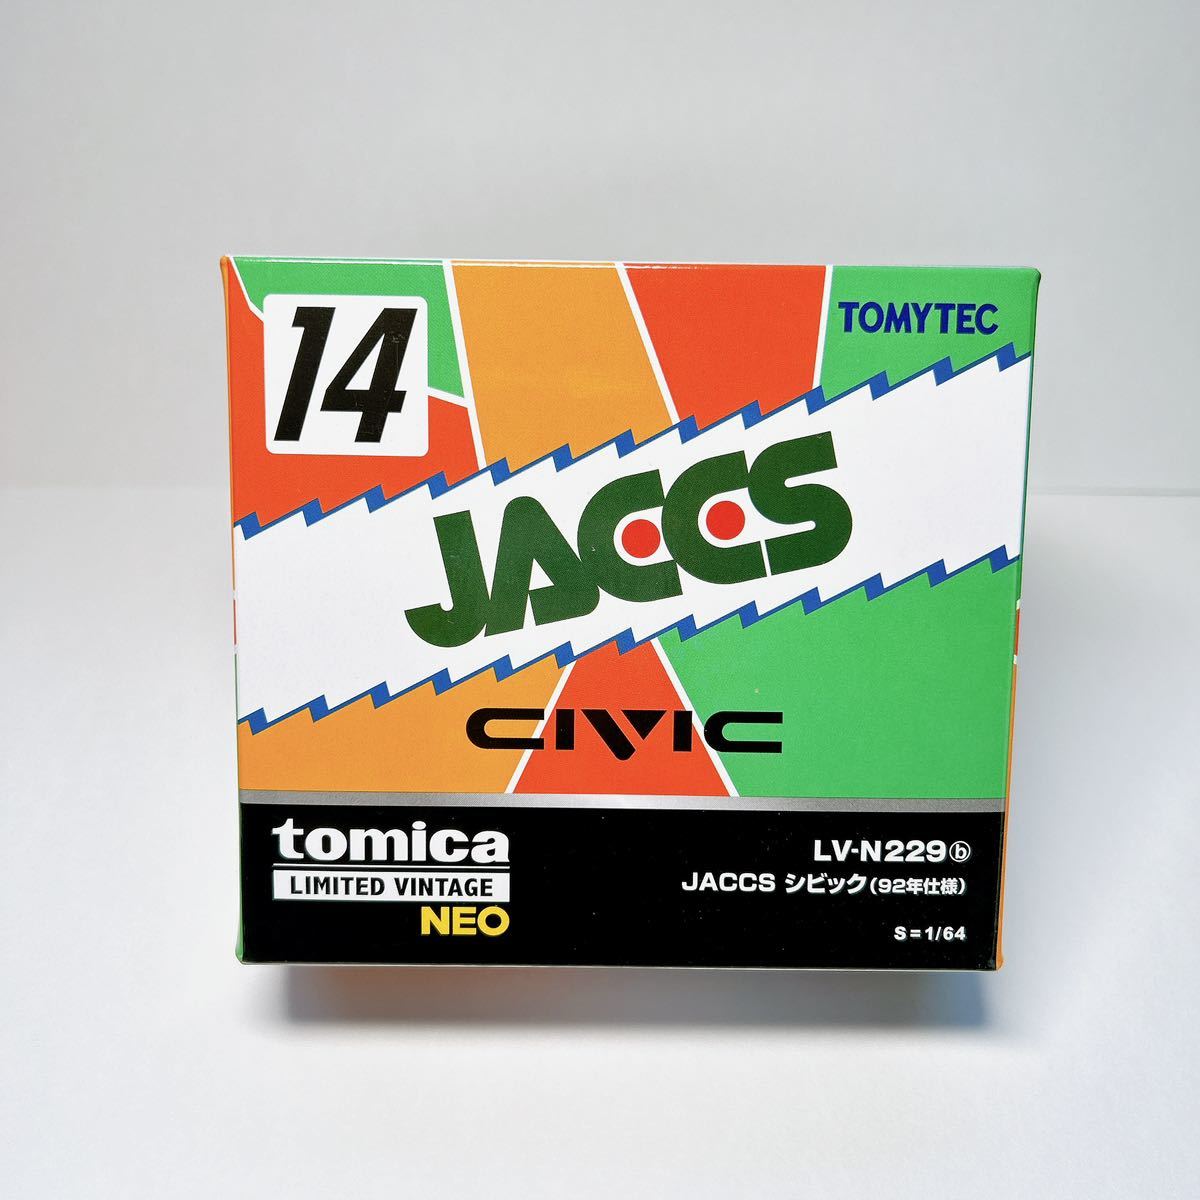 トミカリミテッドヴィンテージネオ JACCS シビック(92年仕様)LV-N229b _画像1